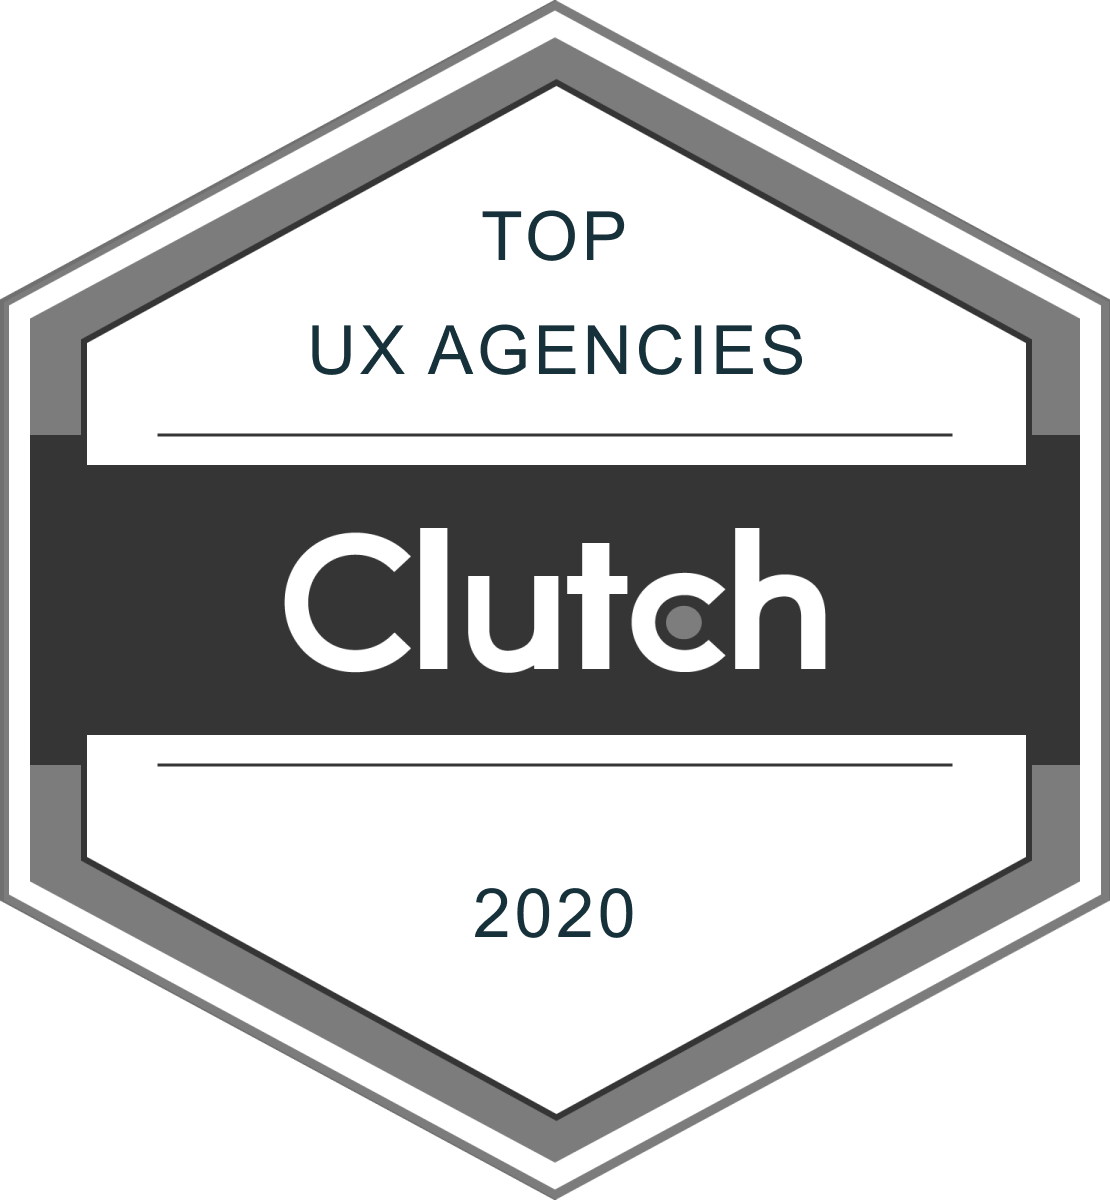 Top UX Agencies Clutch